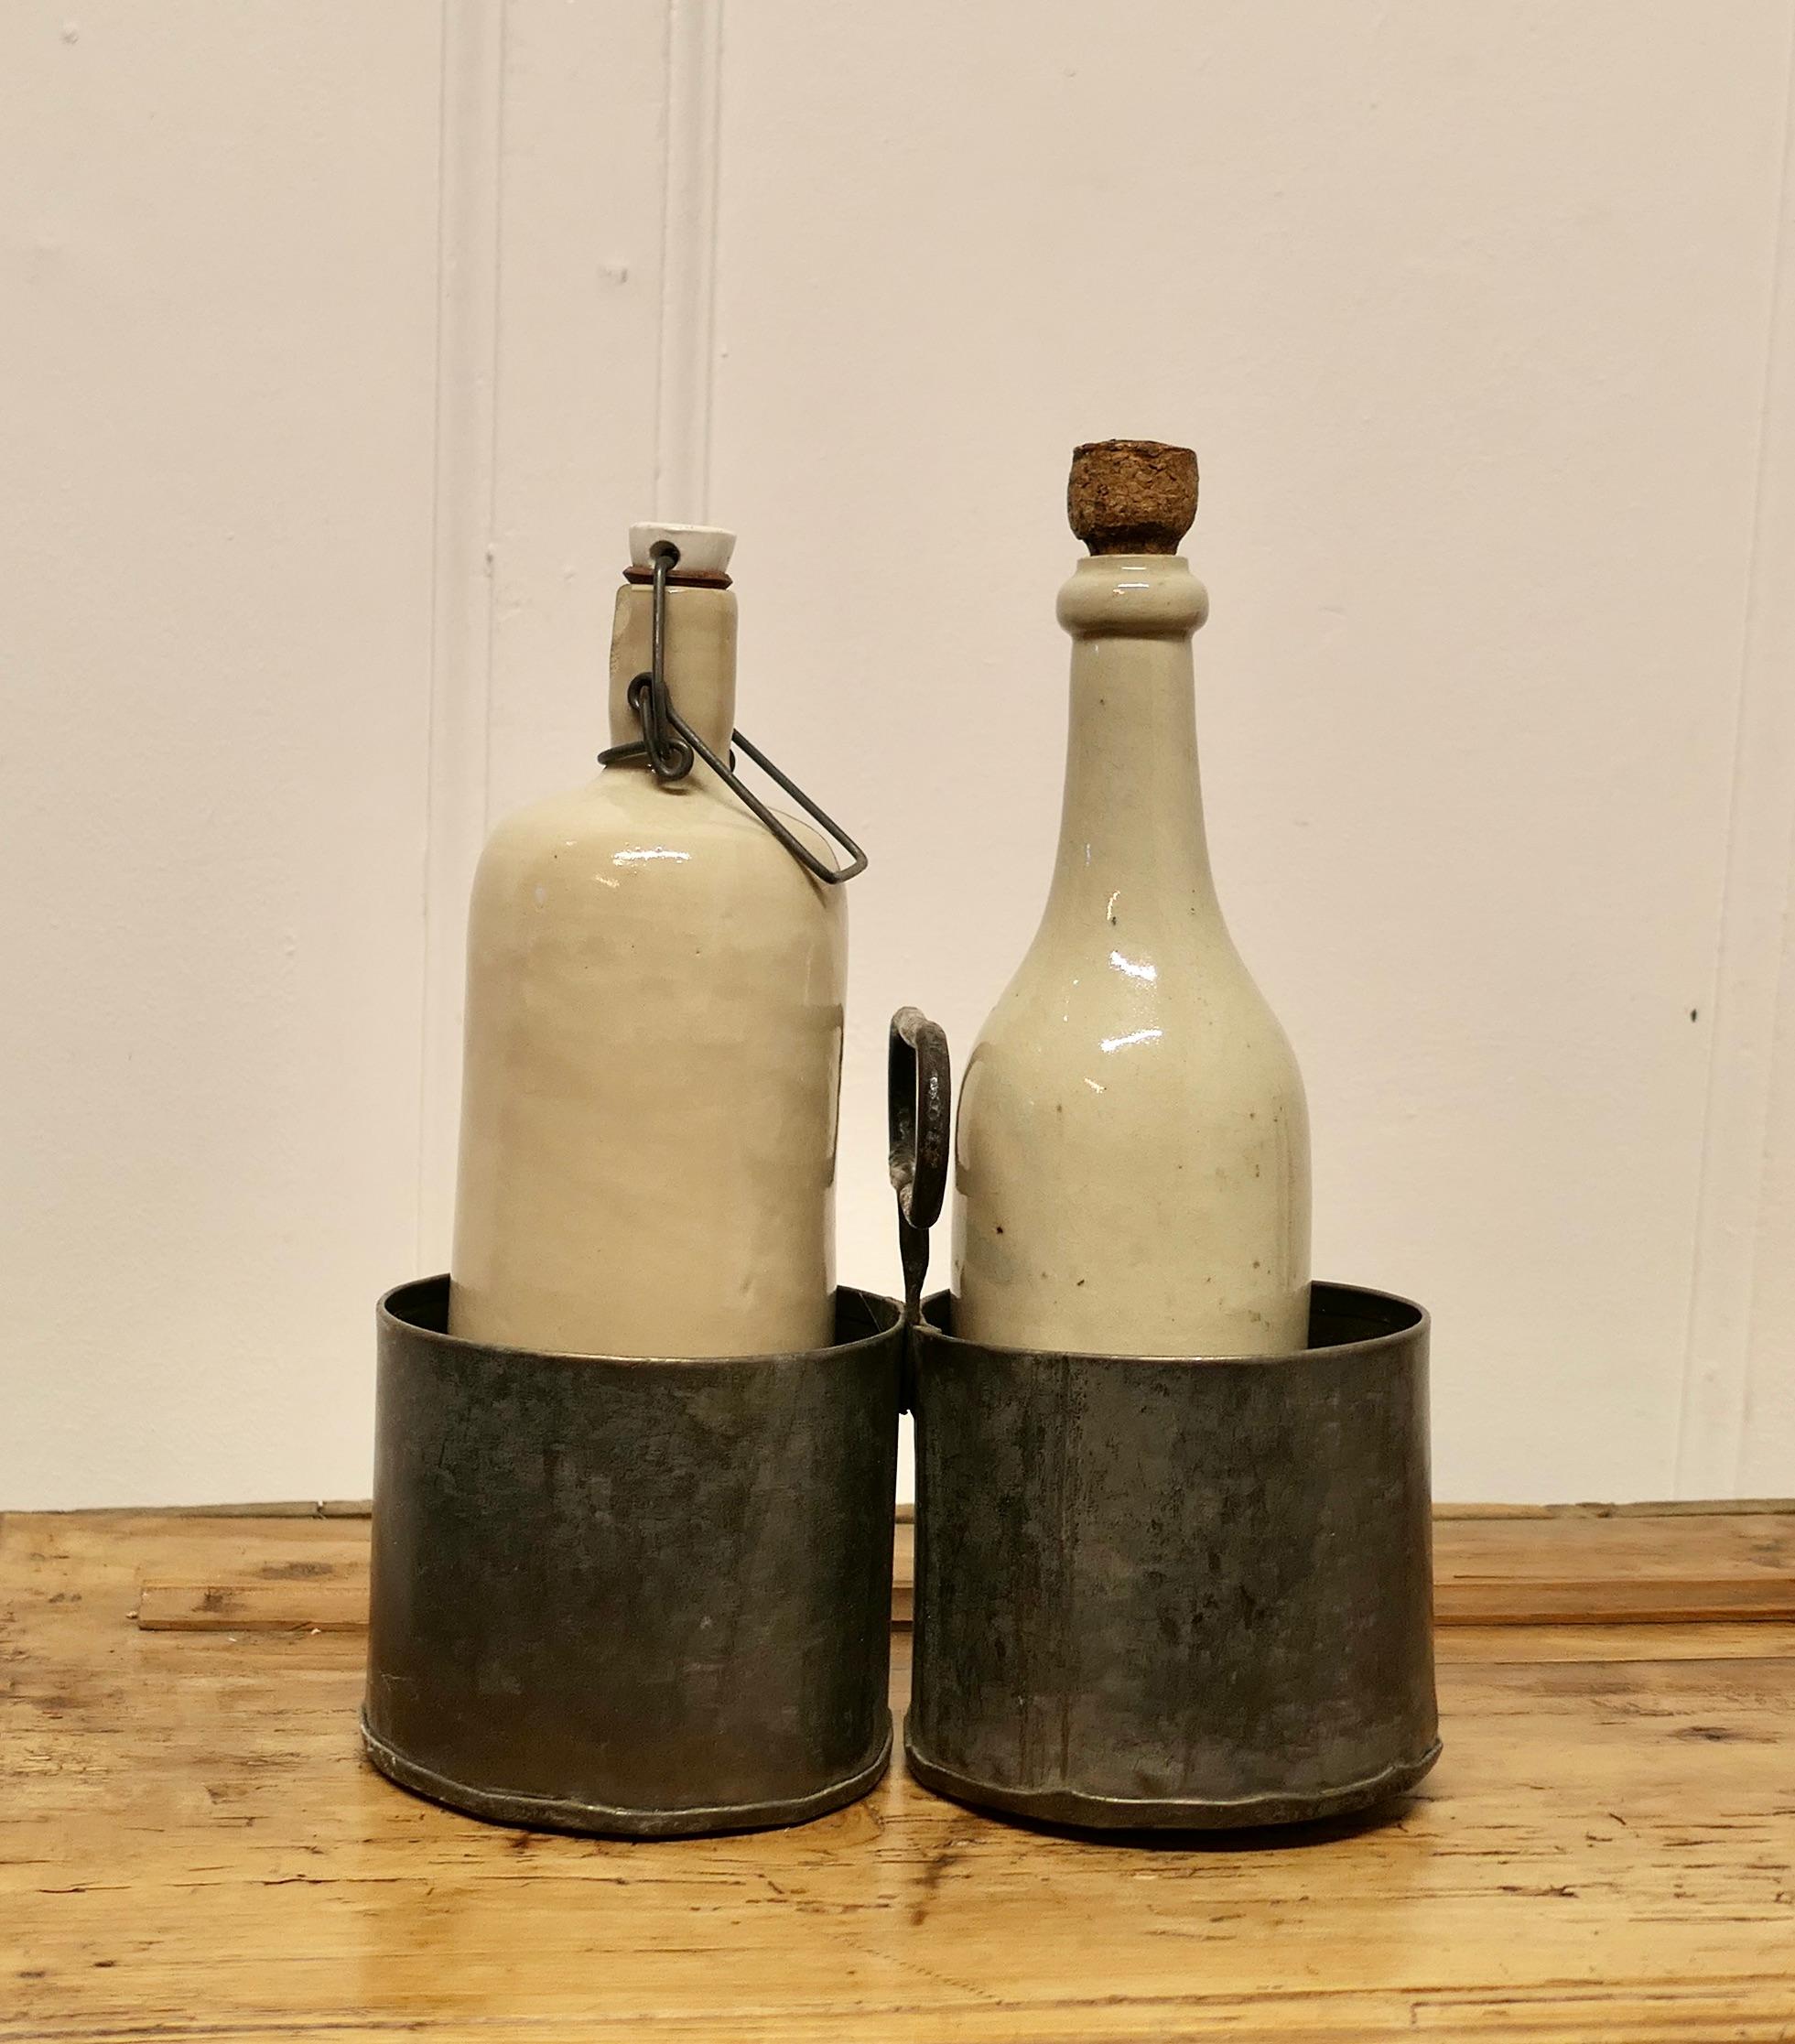  Useful Französischer rustikaler Twin Bottle Carrier, Coaster, Französisch

Tolles kleines Teil, sehr nützlich, um hohe Flaschen auf dem Tisch herumzureichen und um zu verhindern, dass sie umgestoßen werden
Der Untersetzer fasst 2 Flaschen mit einem